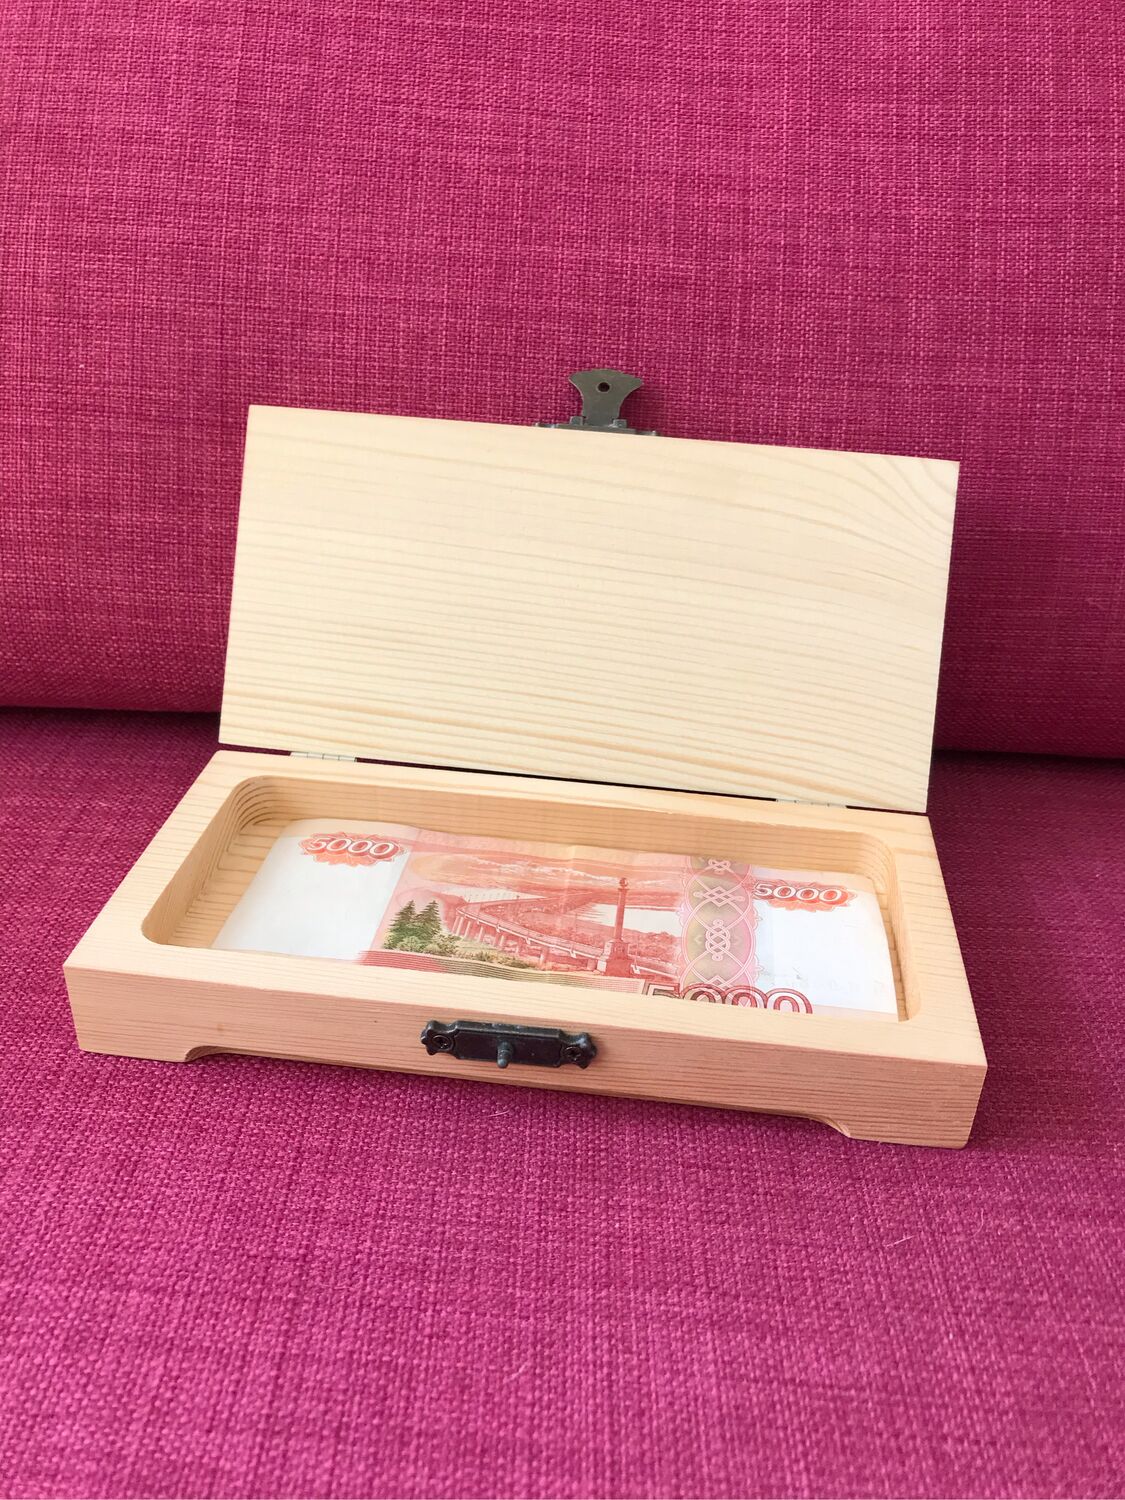 Купюрница-коробочка для хранения денег.